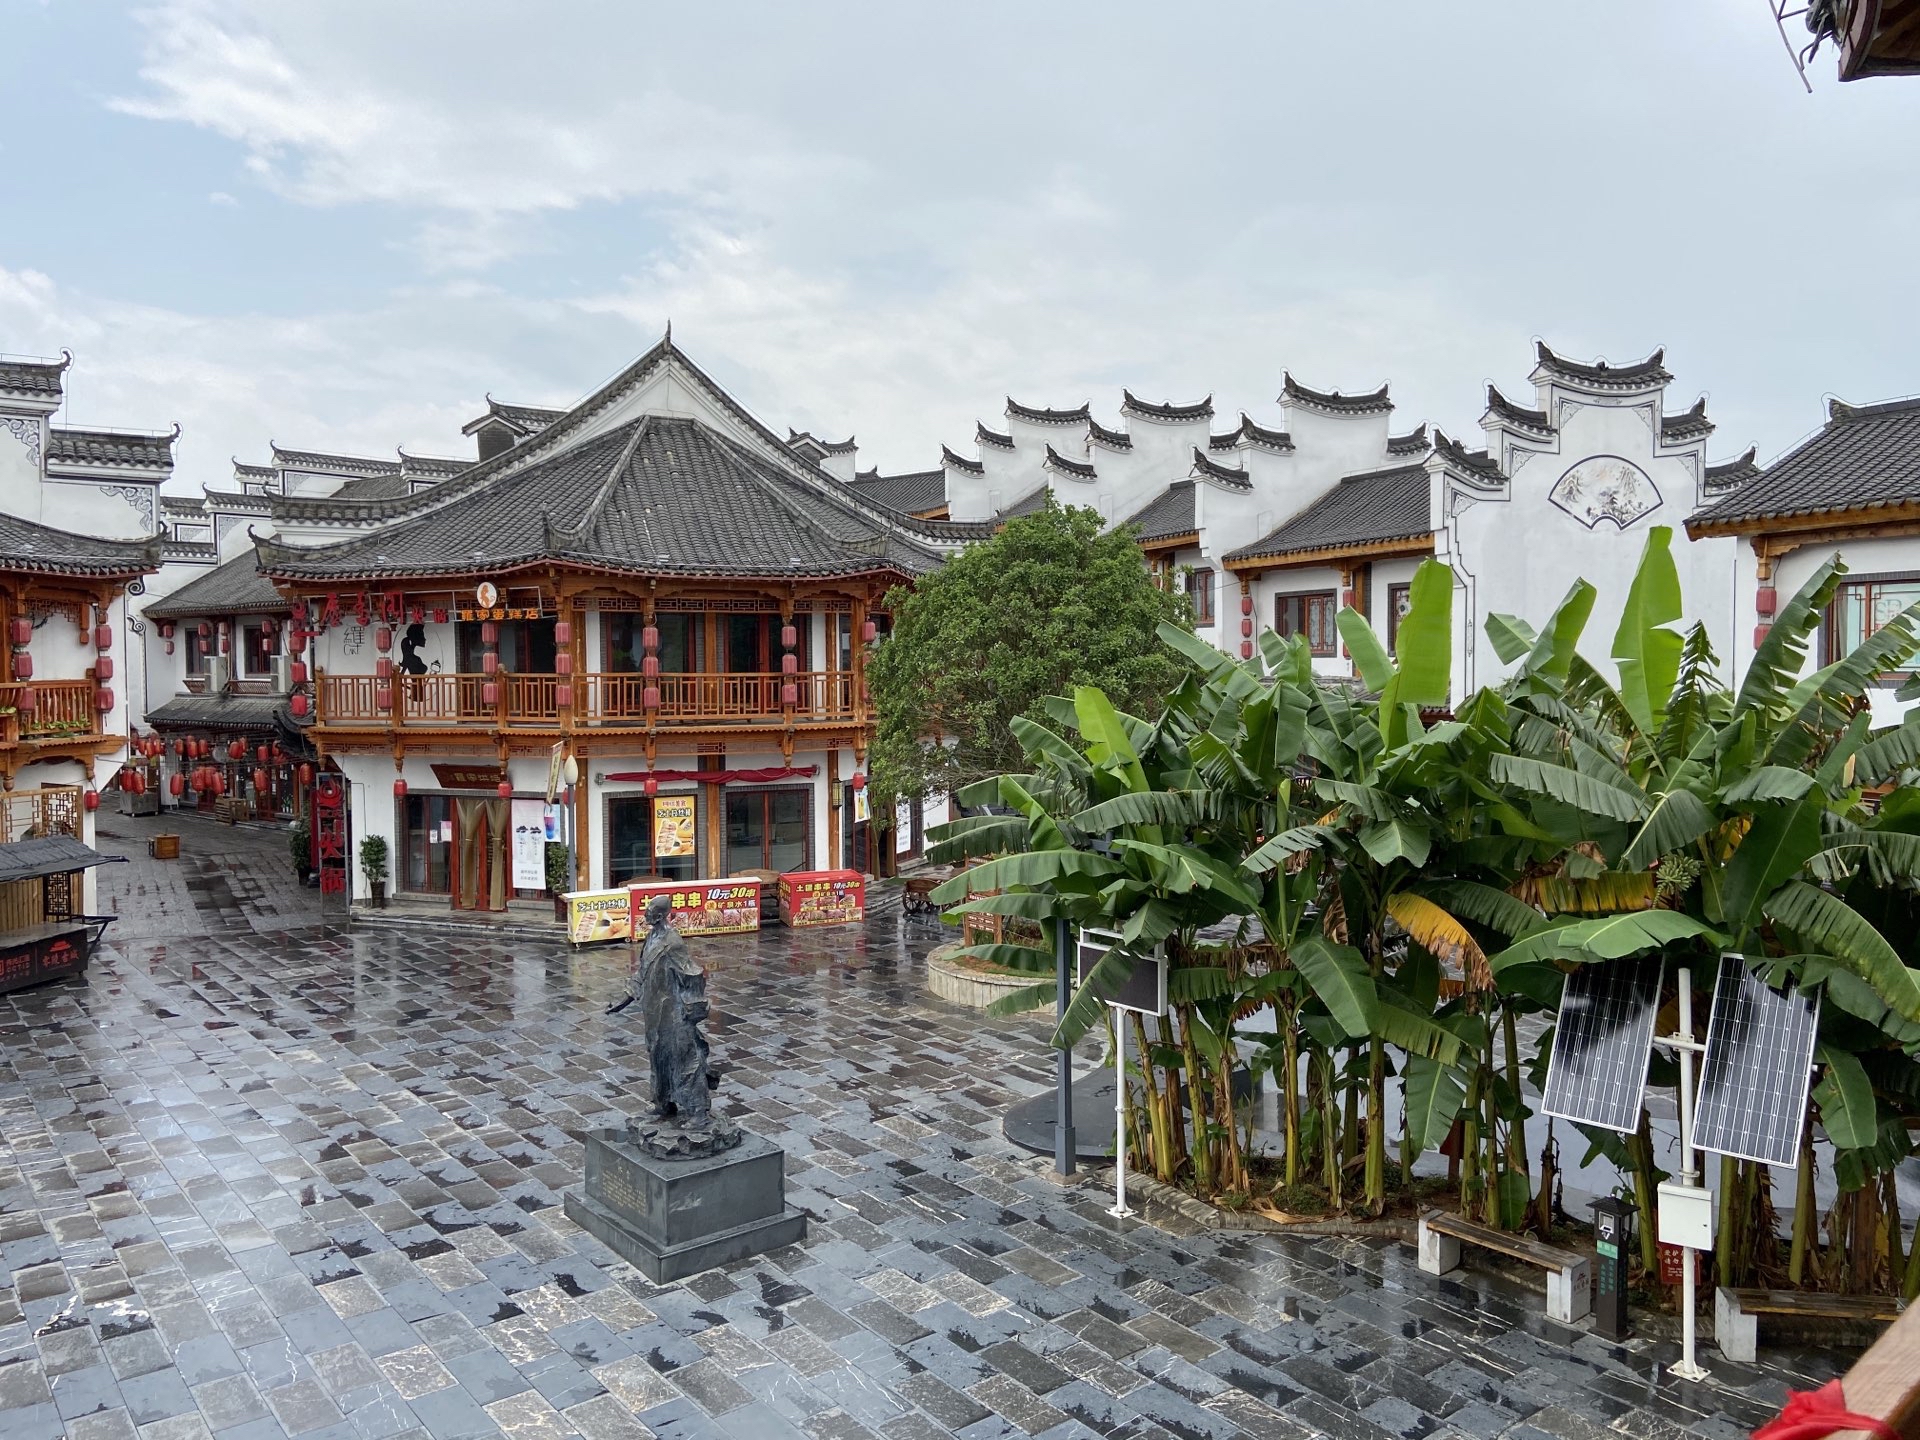 【携程攻略】永州柳子庙景点,柳子庙坐落在永州潇水之西的柳子街上,始